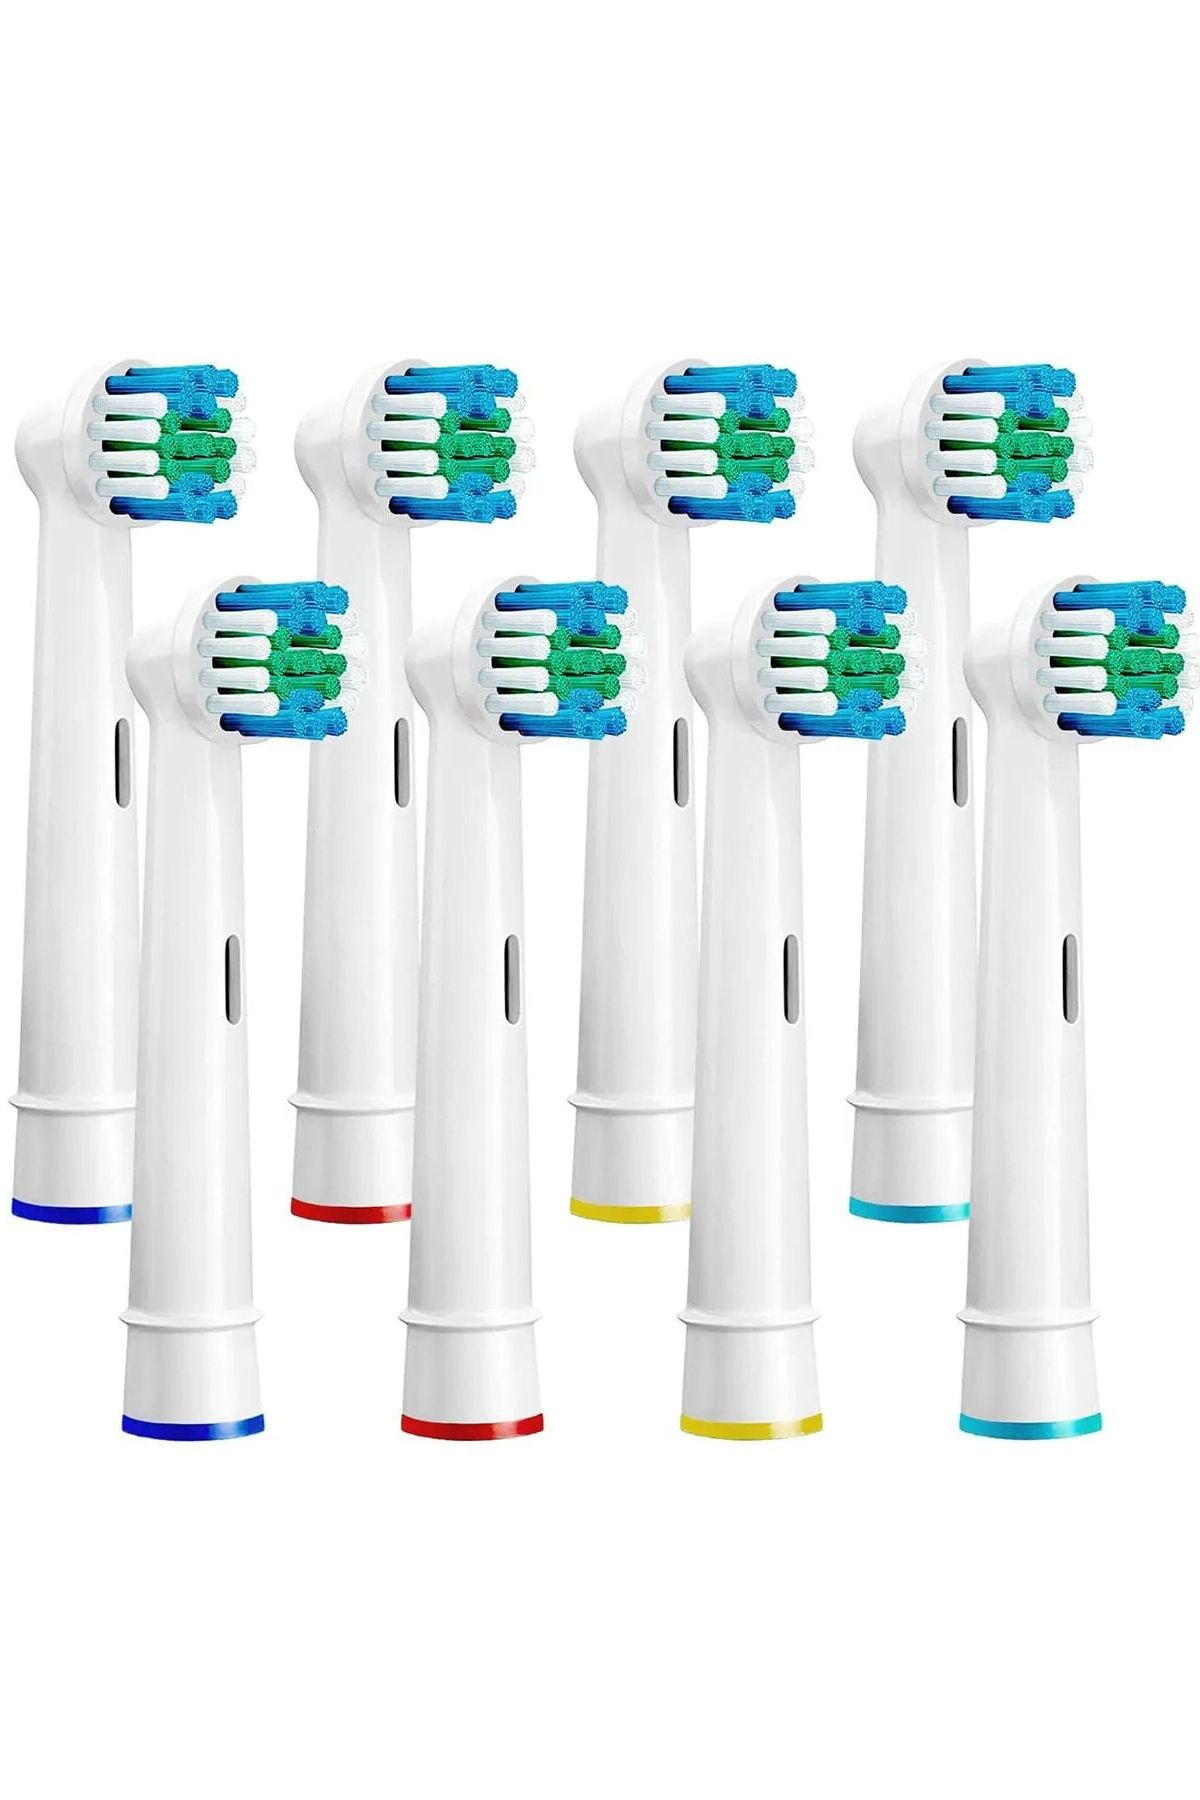 Factorial Elektrikli Ve Pilli Diş Fırçası Yedek Fırça Başlıkları Oral B Ile Uyumlu 8 Adet Orta Sert